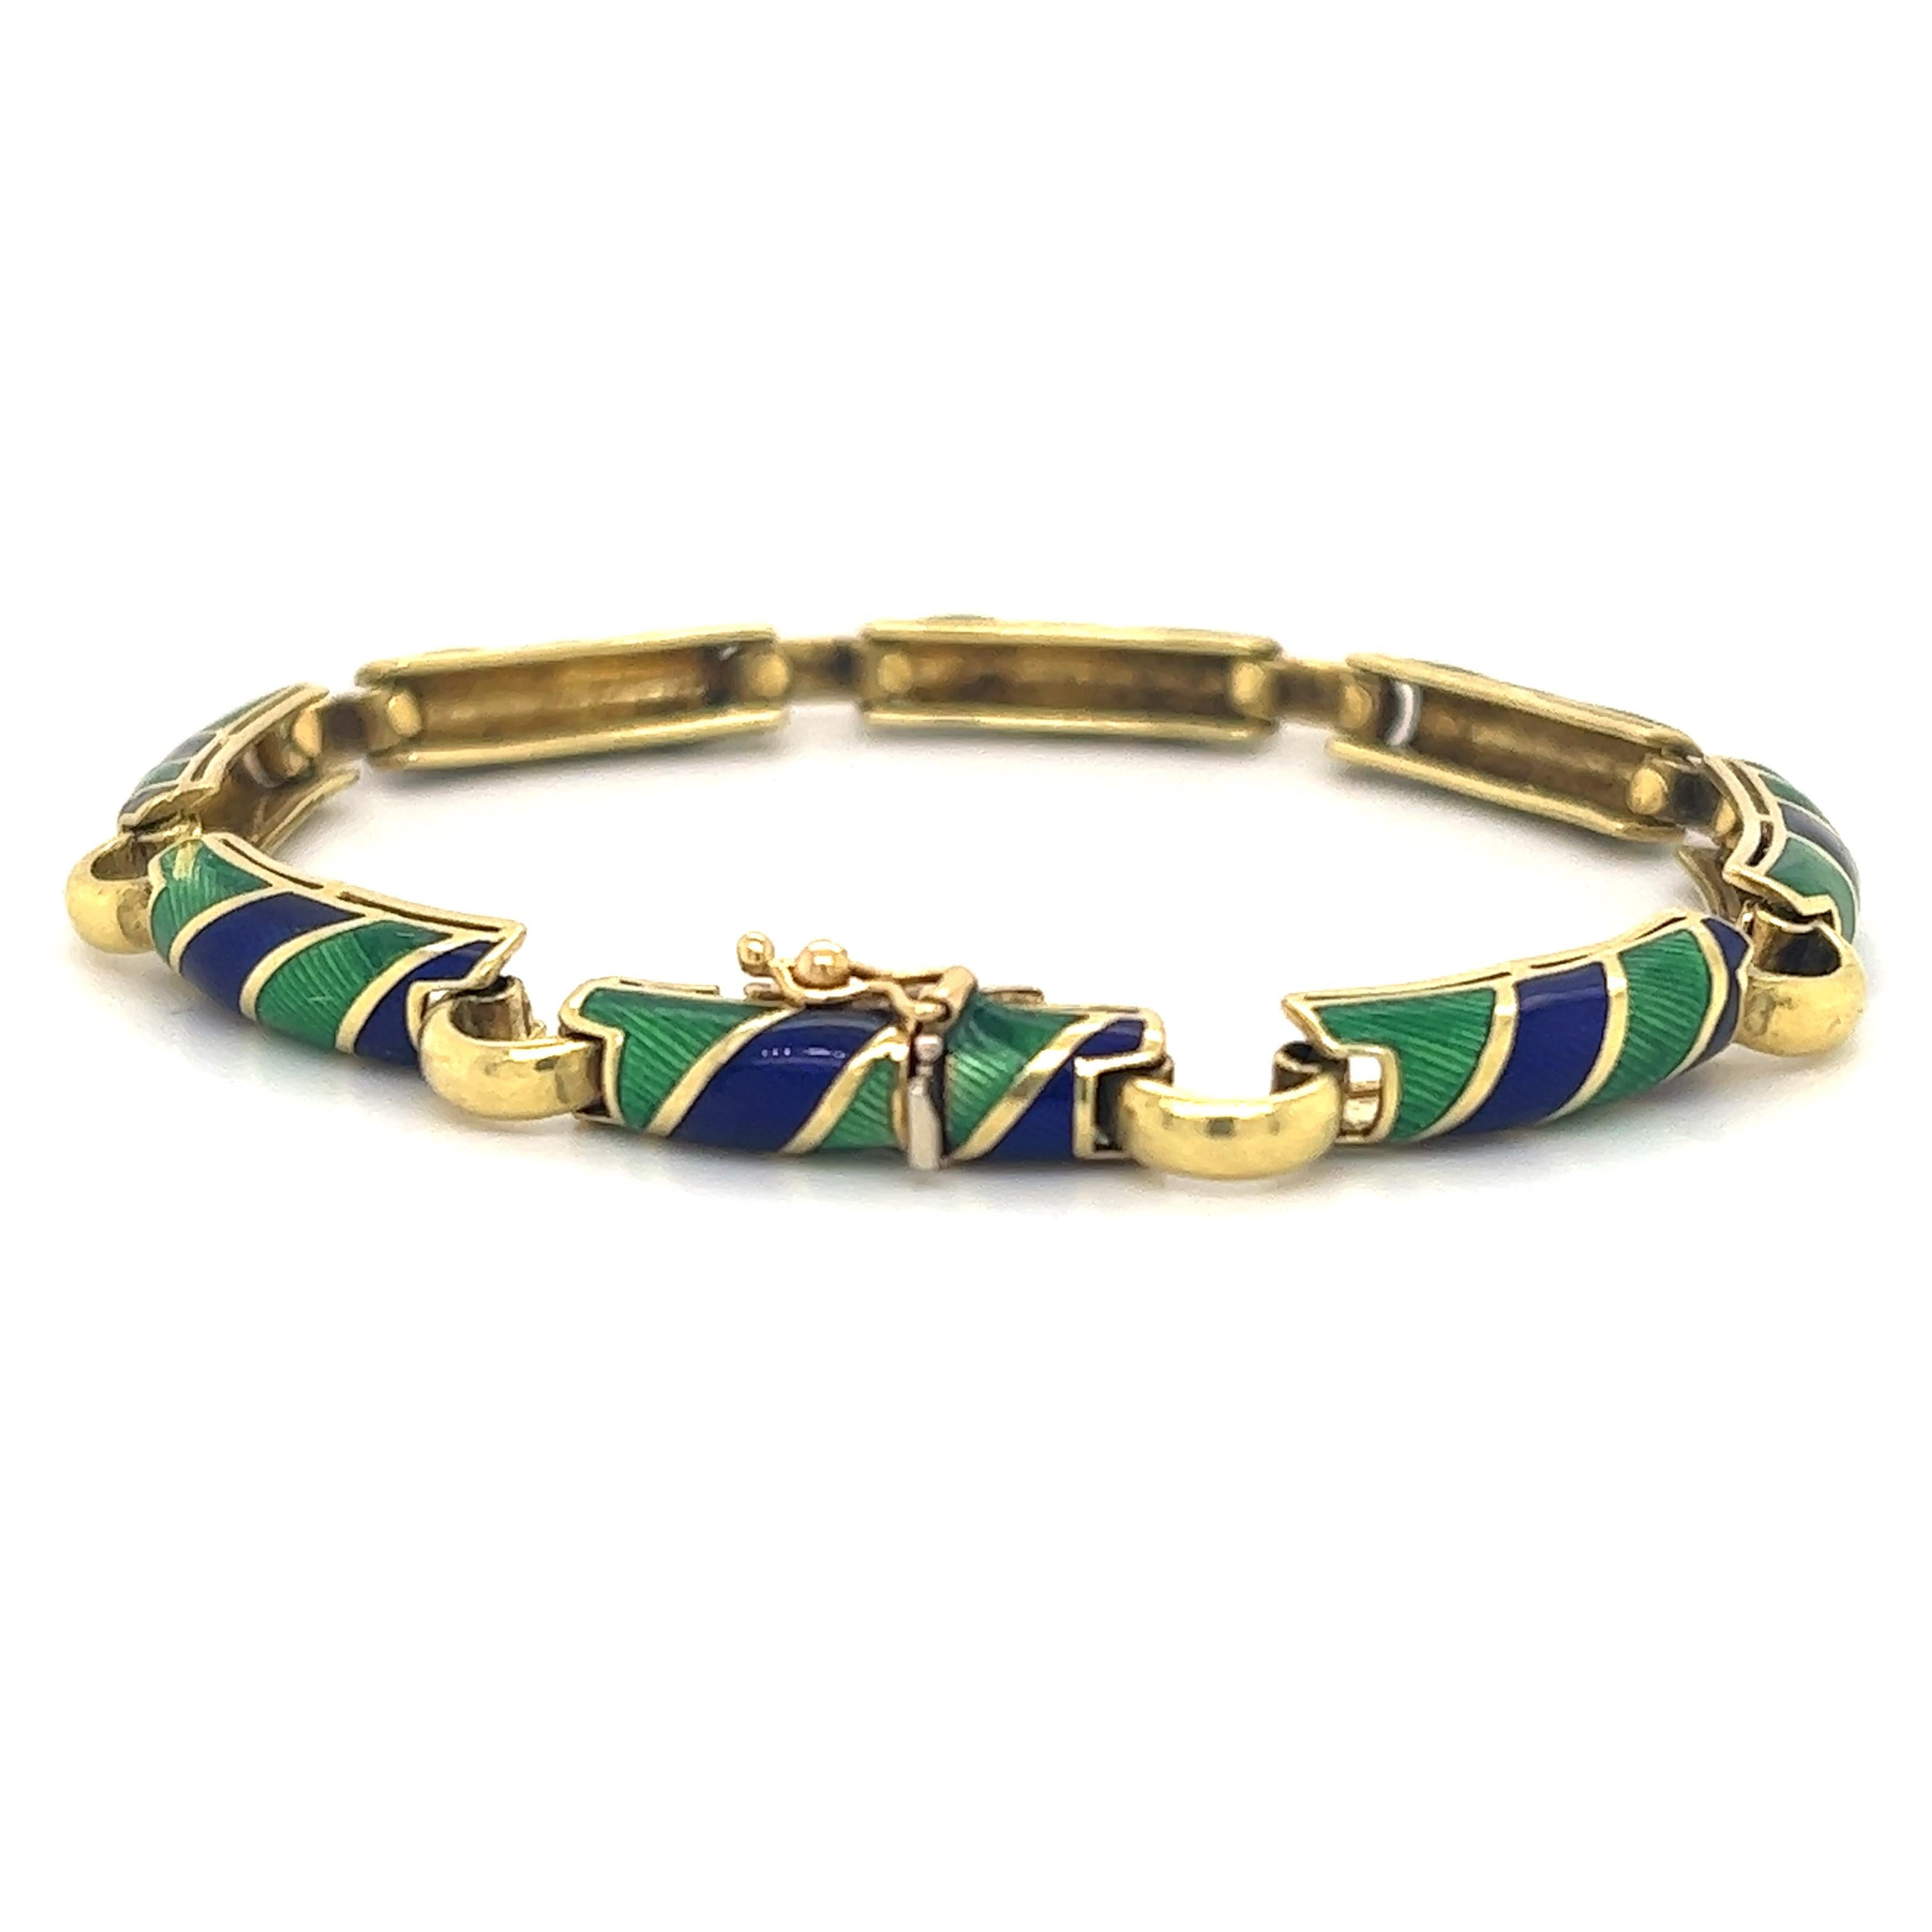 Schönes Armband aus 18k Gelbgold. Das Armband wurde von dem famosen italienischen Designer Uno-A-Erre entworfen.  Das Armband ist mit Guiloche-Email in Grün und Blau verziert.  Die grünen und blauen Farben dieses Armbands sind leuchtend und bilden